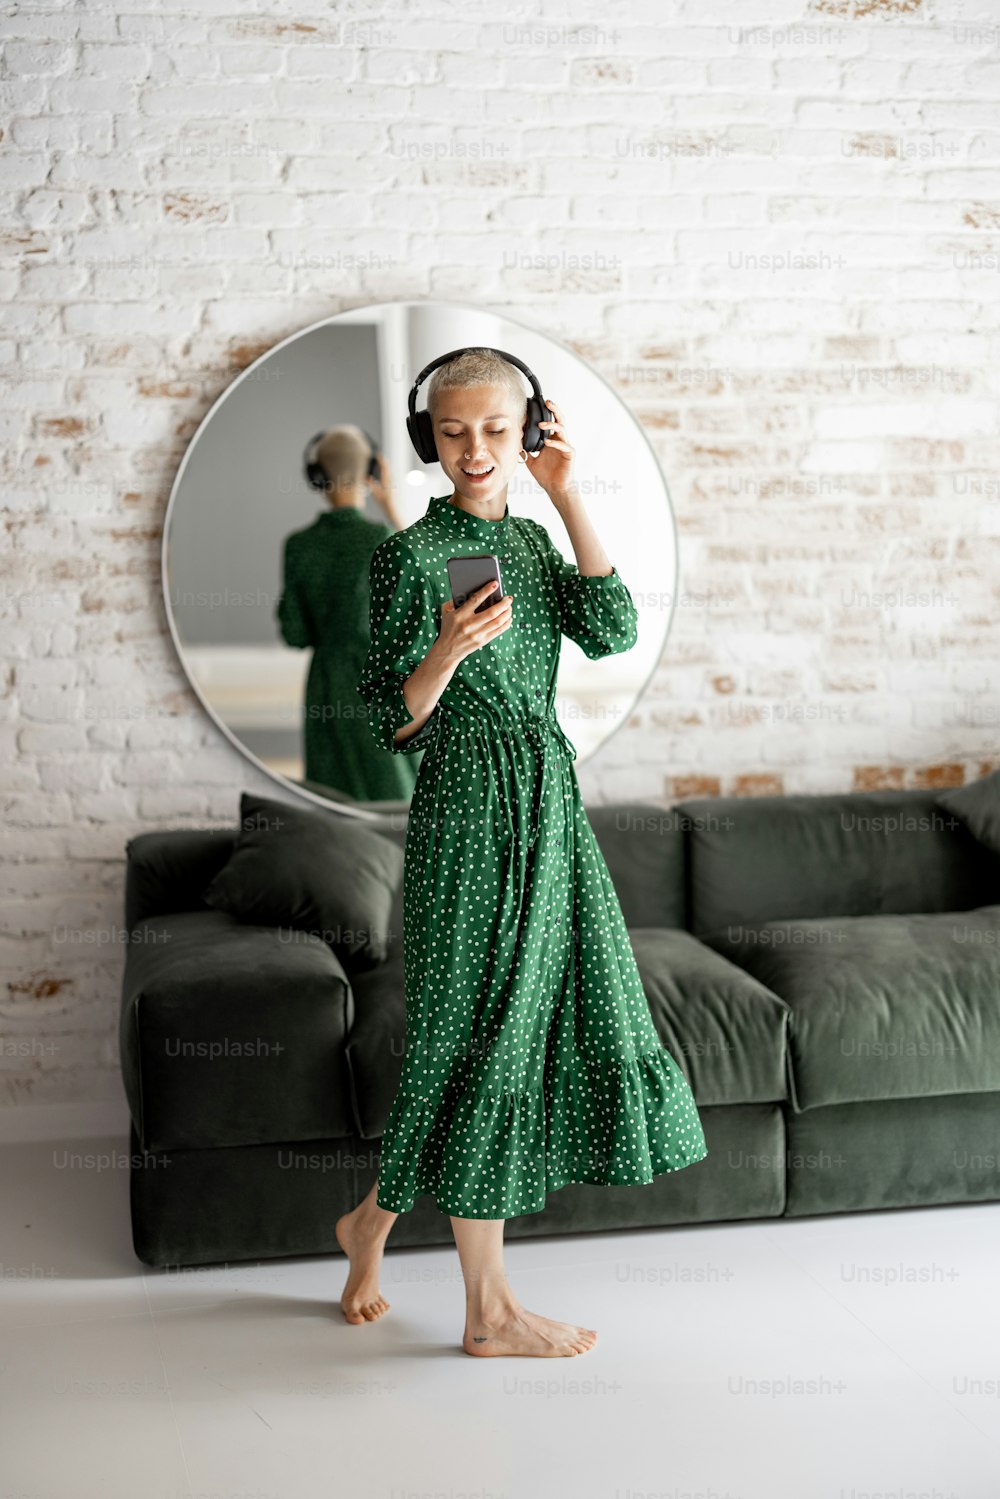 Mujer elegante con vestido verde disfruta de la música con auriculares y teléfono celular bailando en la sala de estar de su casa